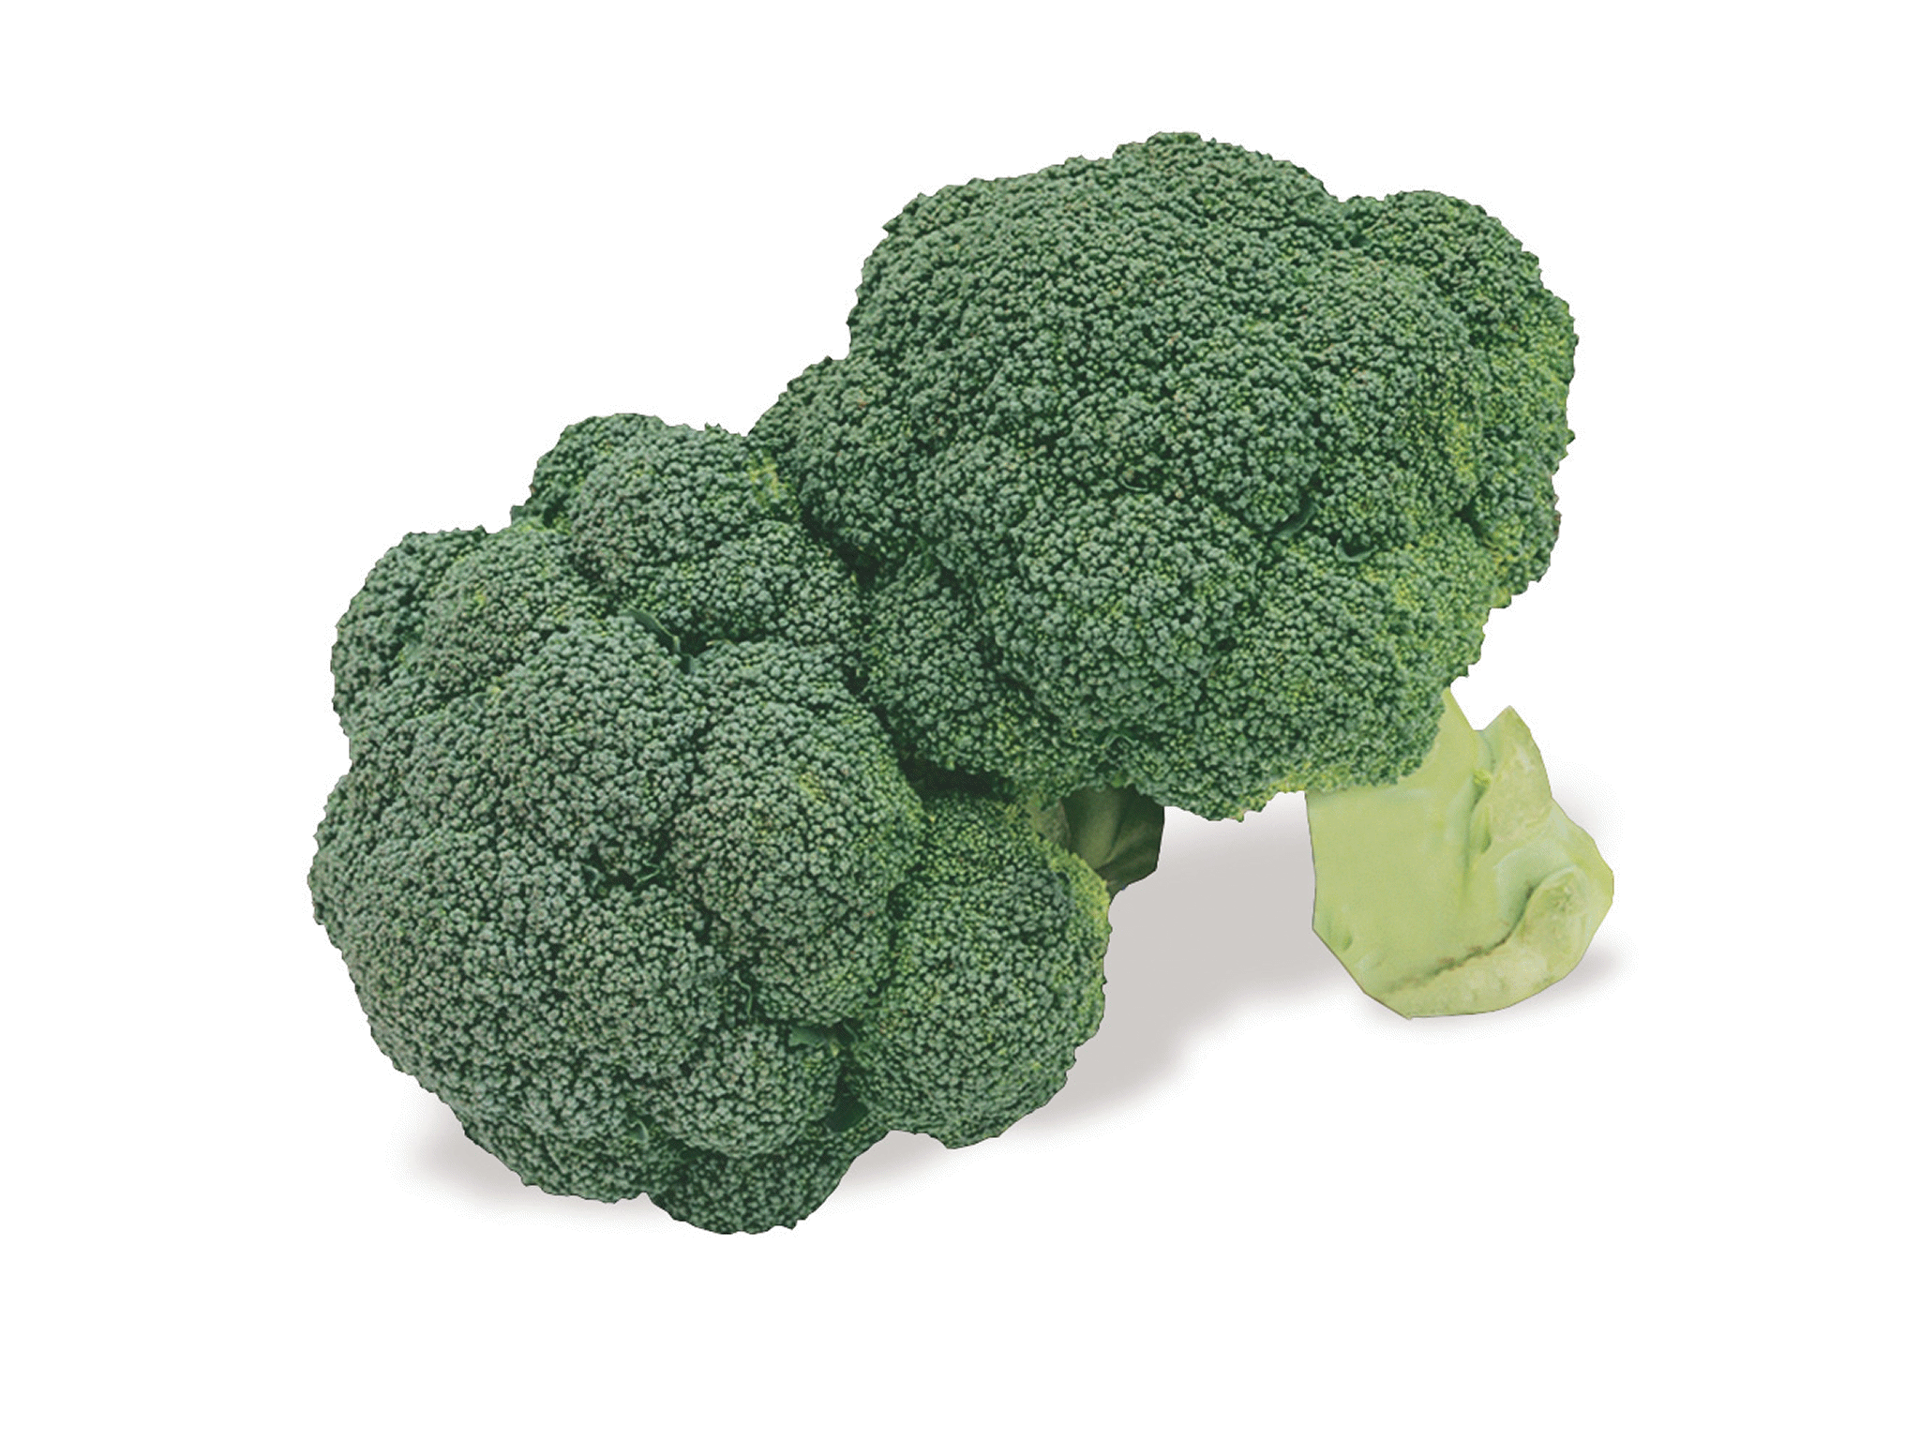 slide 1 of 1, Pacific Organic Broccoli, per lb